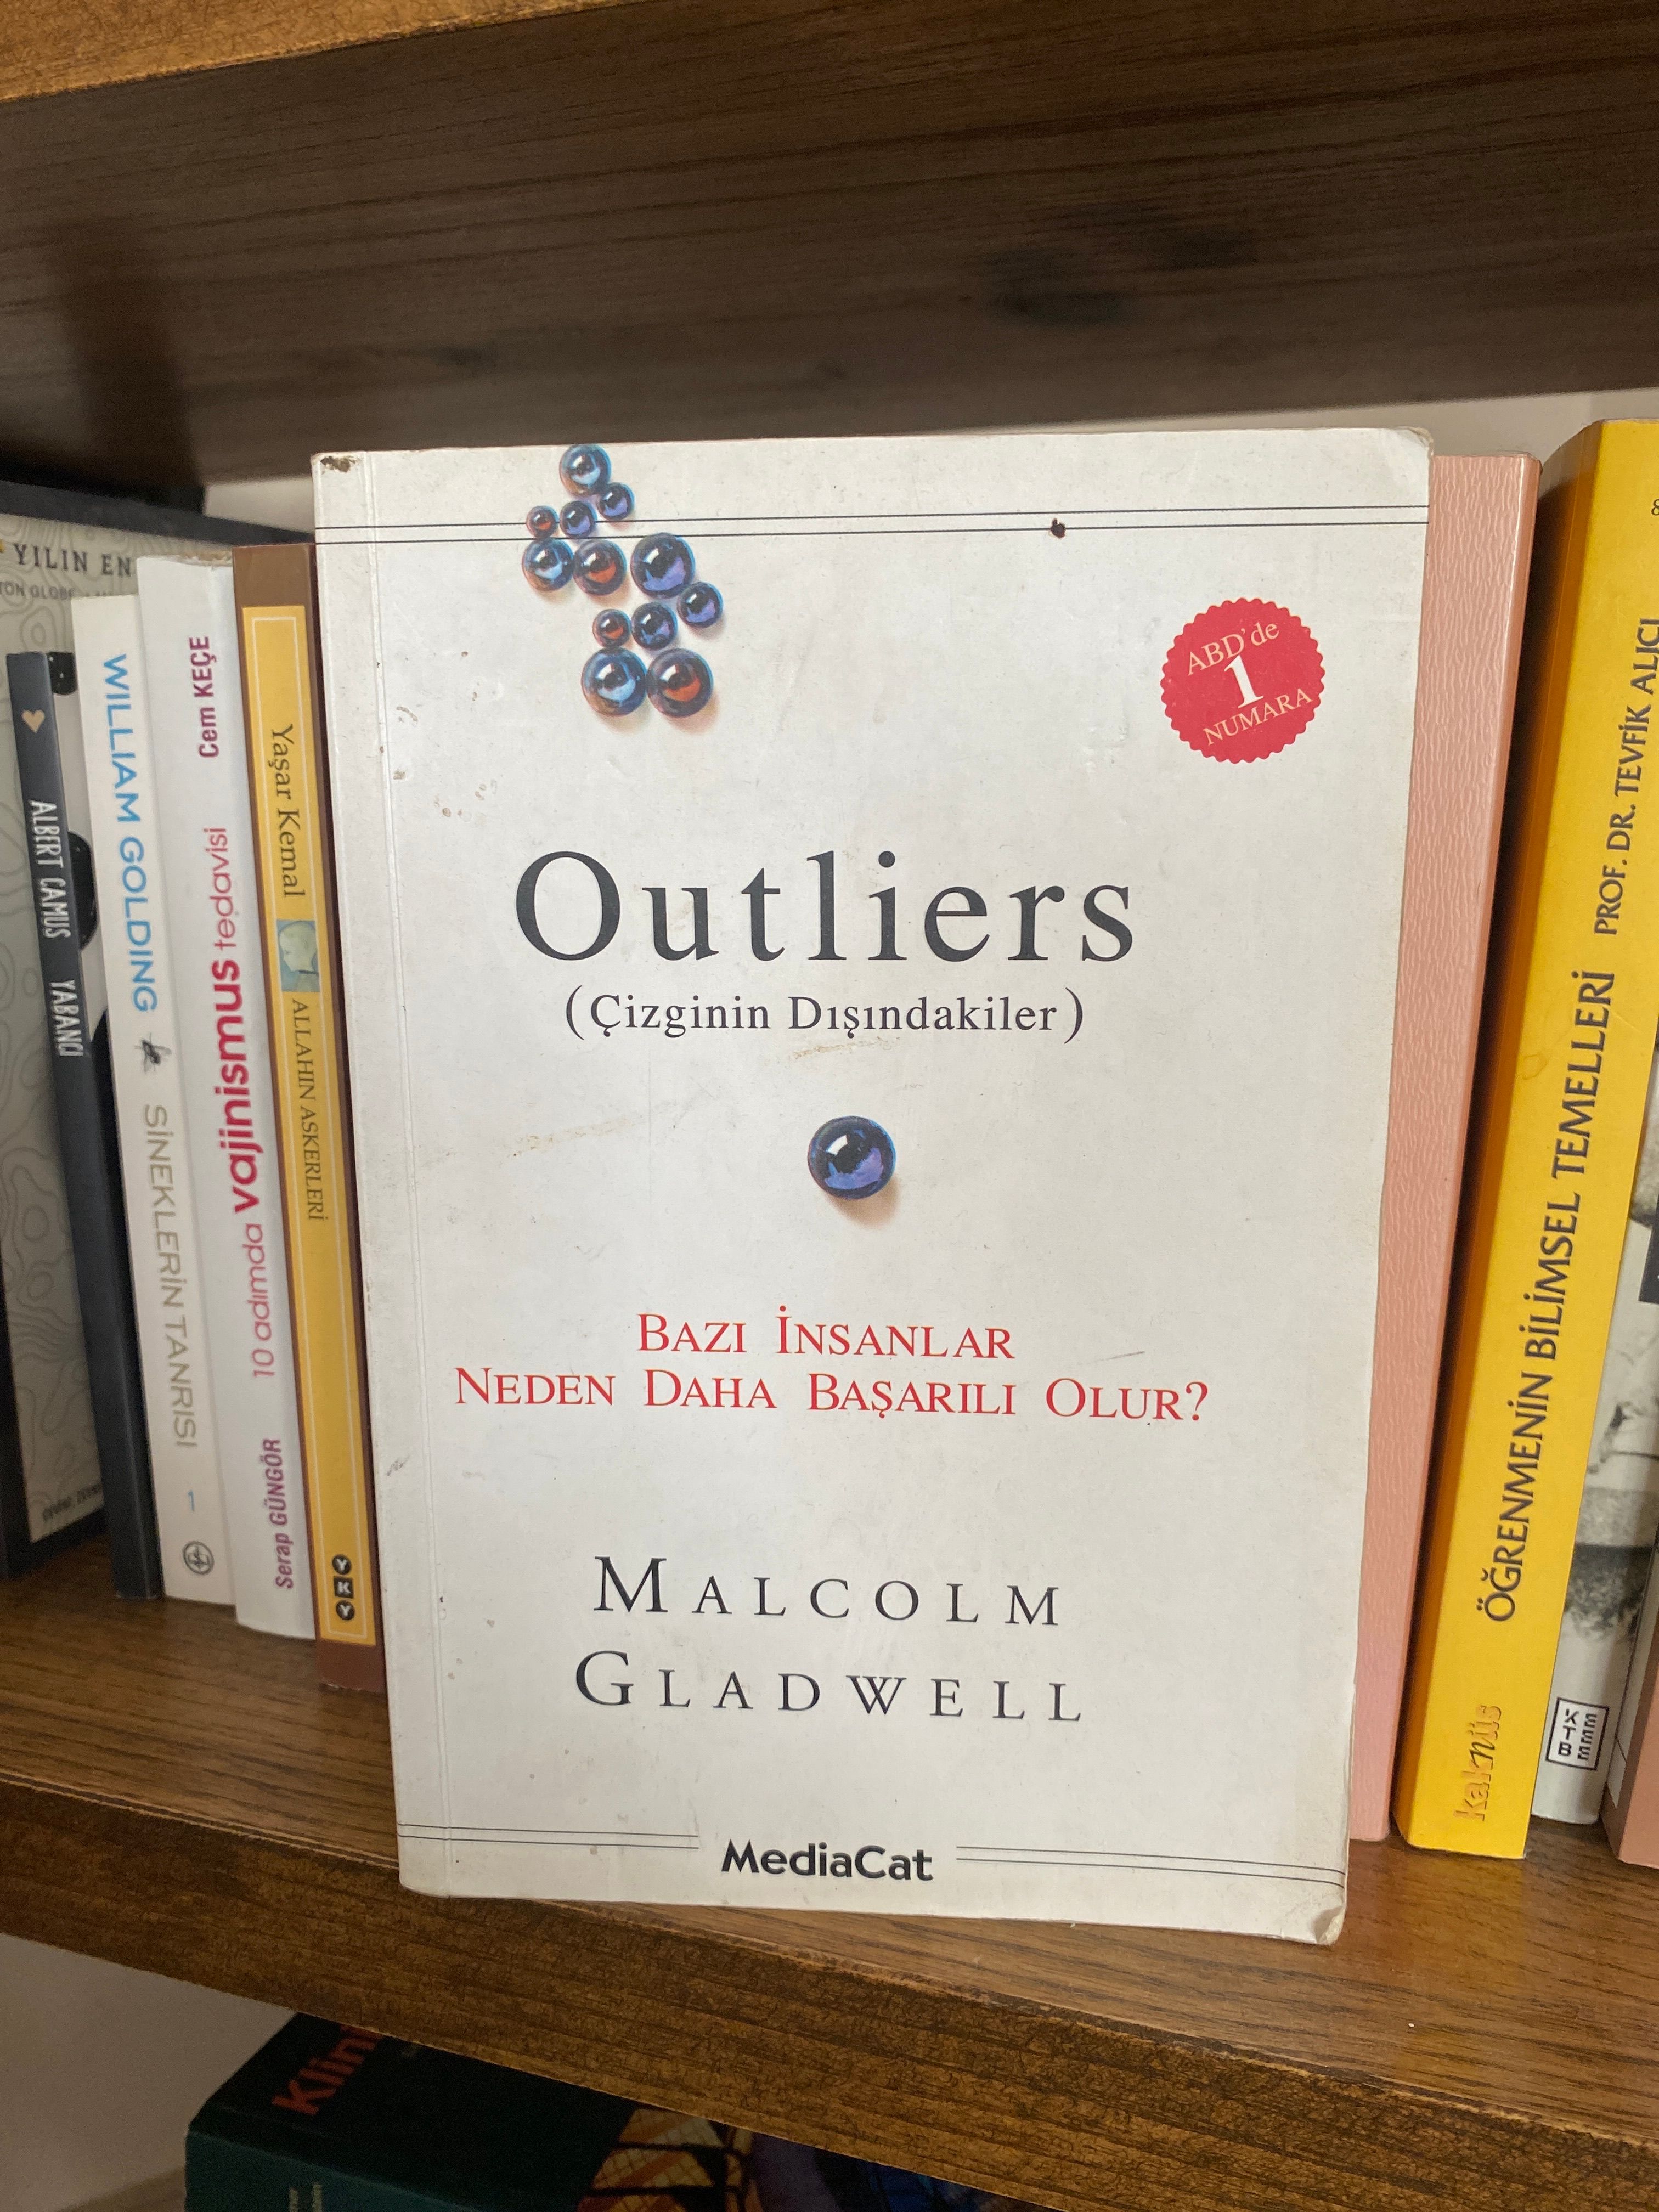 Kitap Önerisi: Outliers

Kitap Okumayı Seven Coto Kadınları,

Bugün size “Outliers” yani “Çizginin Dışındakiler” kitabından bahsetmek istiyorum. Kitap başarılı insanların başarılarının sırlarından bahsediyor. 

Sadece sayısal zekanın yeterli olmadığını, insan ilişkilerinin yani kişilerarası zeka tipinin de başarıya ulaşmada  ne kadar önemli olduğunu bu kitapta göreceksiniz.

Başarının kurallarını, ailenin önemini, doğduğumuz dönemin başarı üzerindeki etkisini ve sizi şaşırtacak birçok bilgiyi bu kitapta bulabilirsiniz. 

Keyifli okumalar.

# # # # # # #